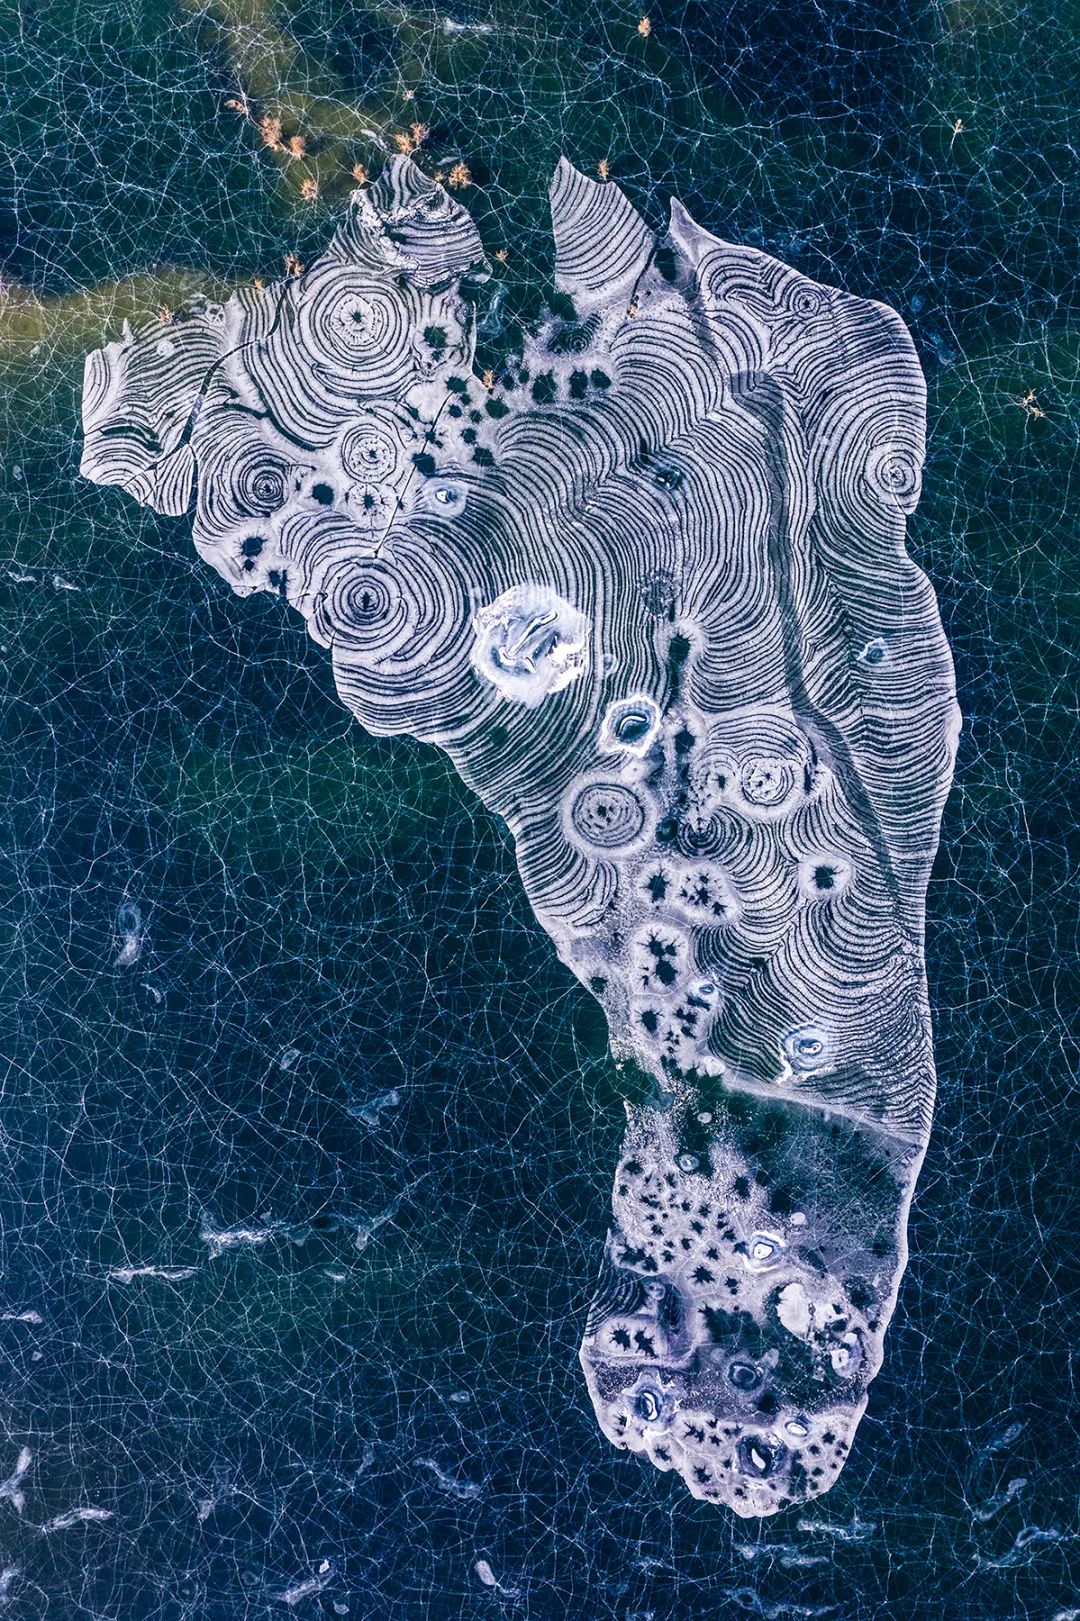 2019年2月”天空之城全球航航拍大赛自然组二等奖作品《足迹》王汉冰 摄